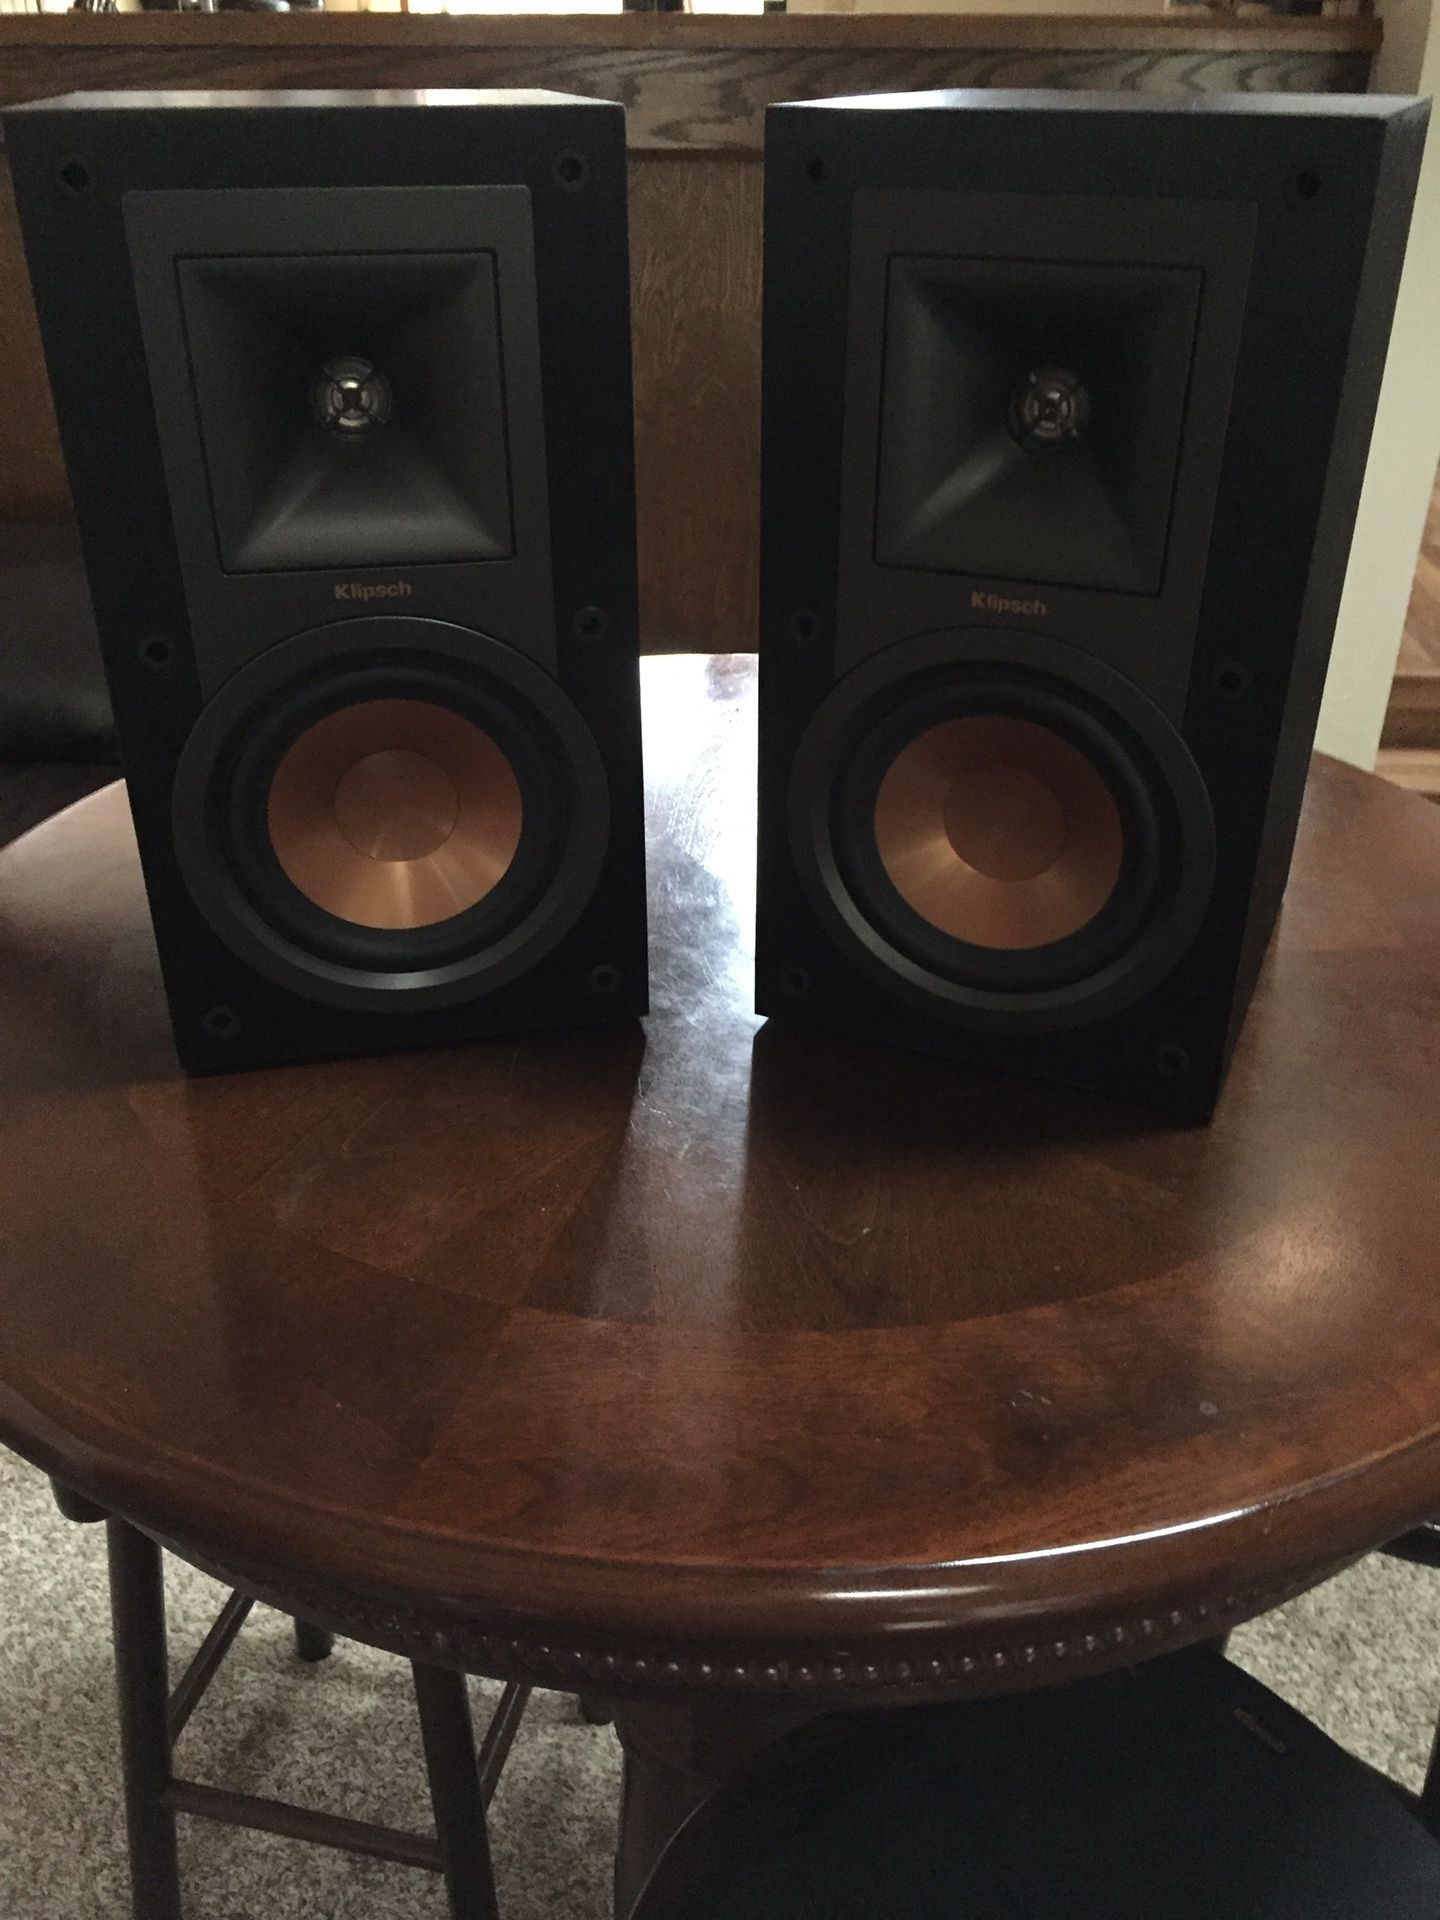 Klipsch R-15m speakers